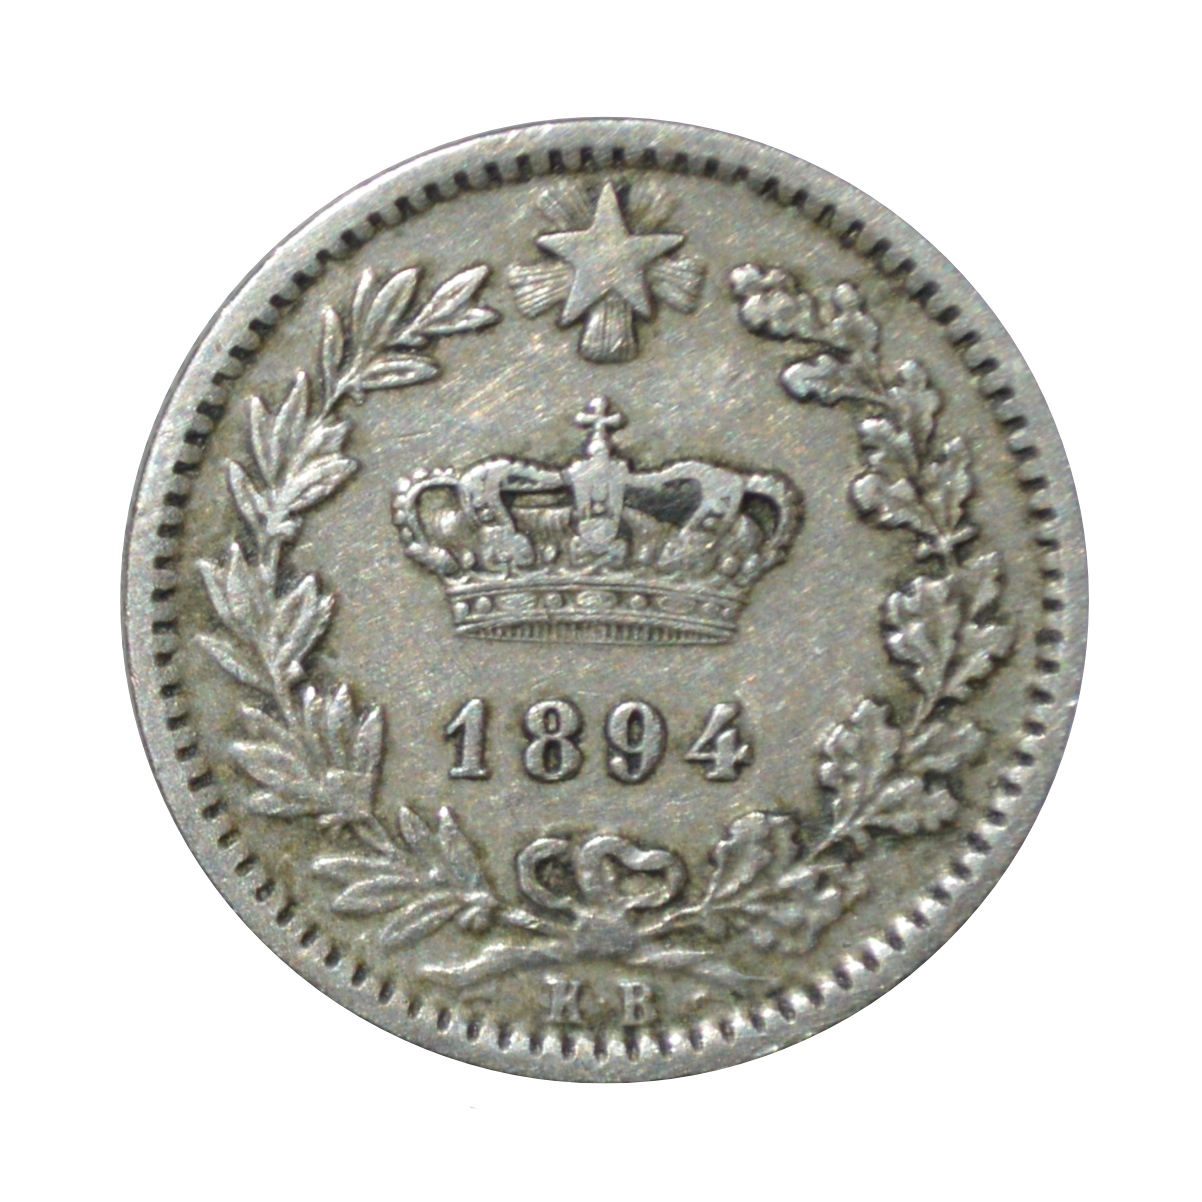 سکه تزیینی طرح کشور ایتالیا مدل 20 سنتسیمو 1894 میلادی 